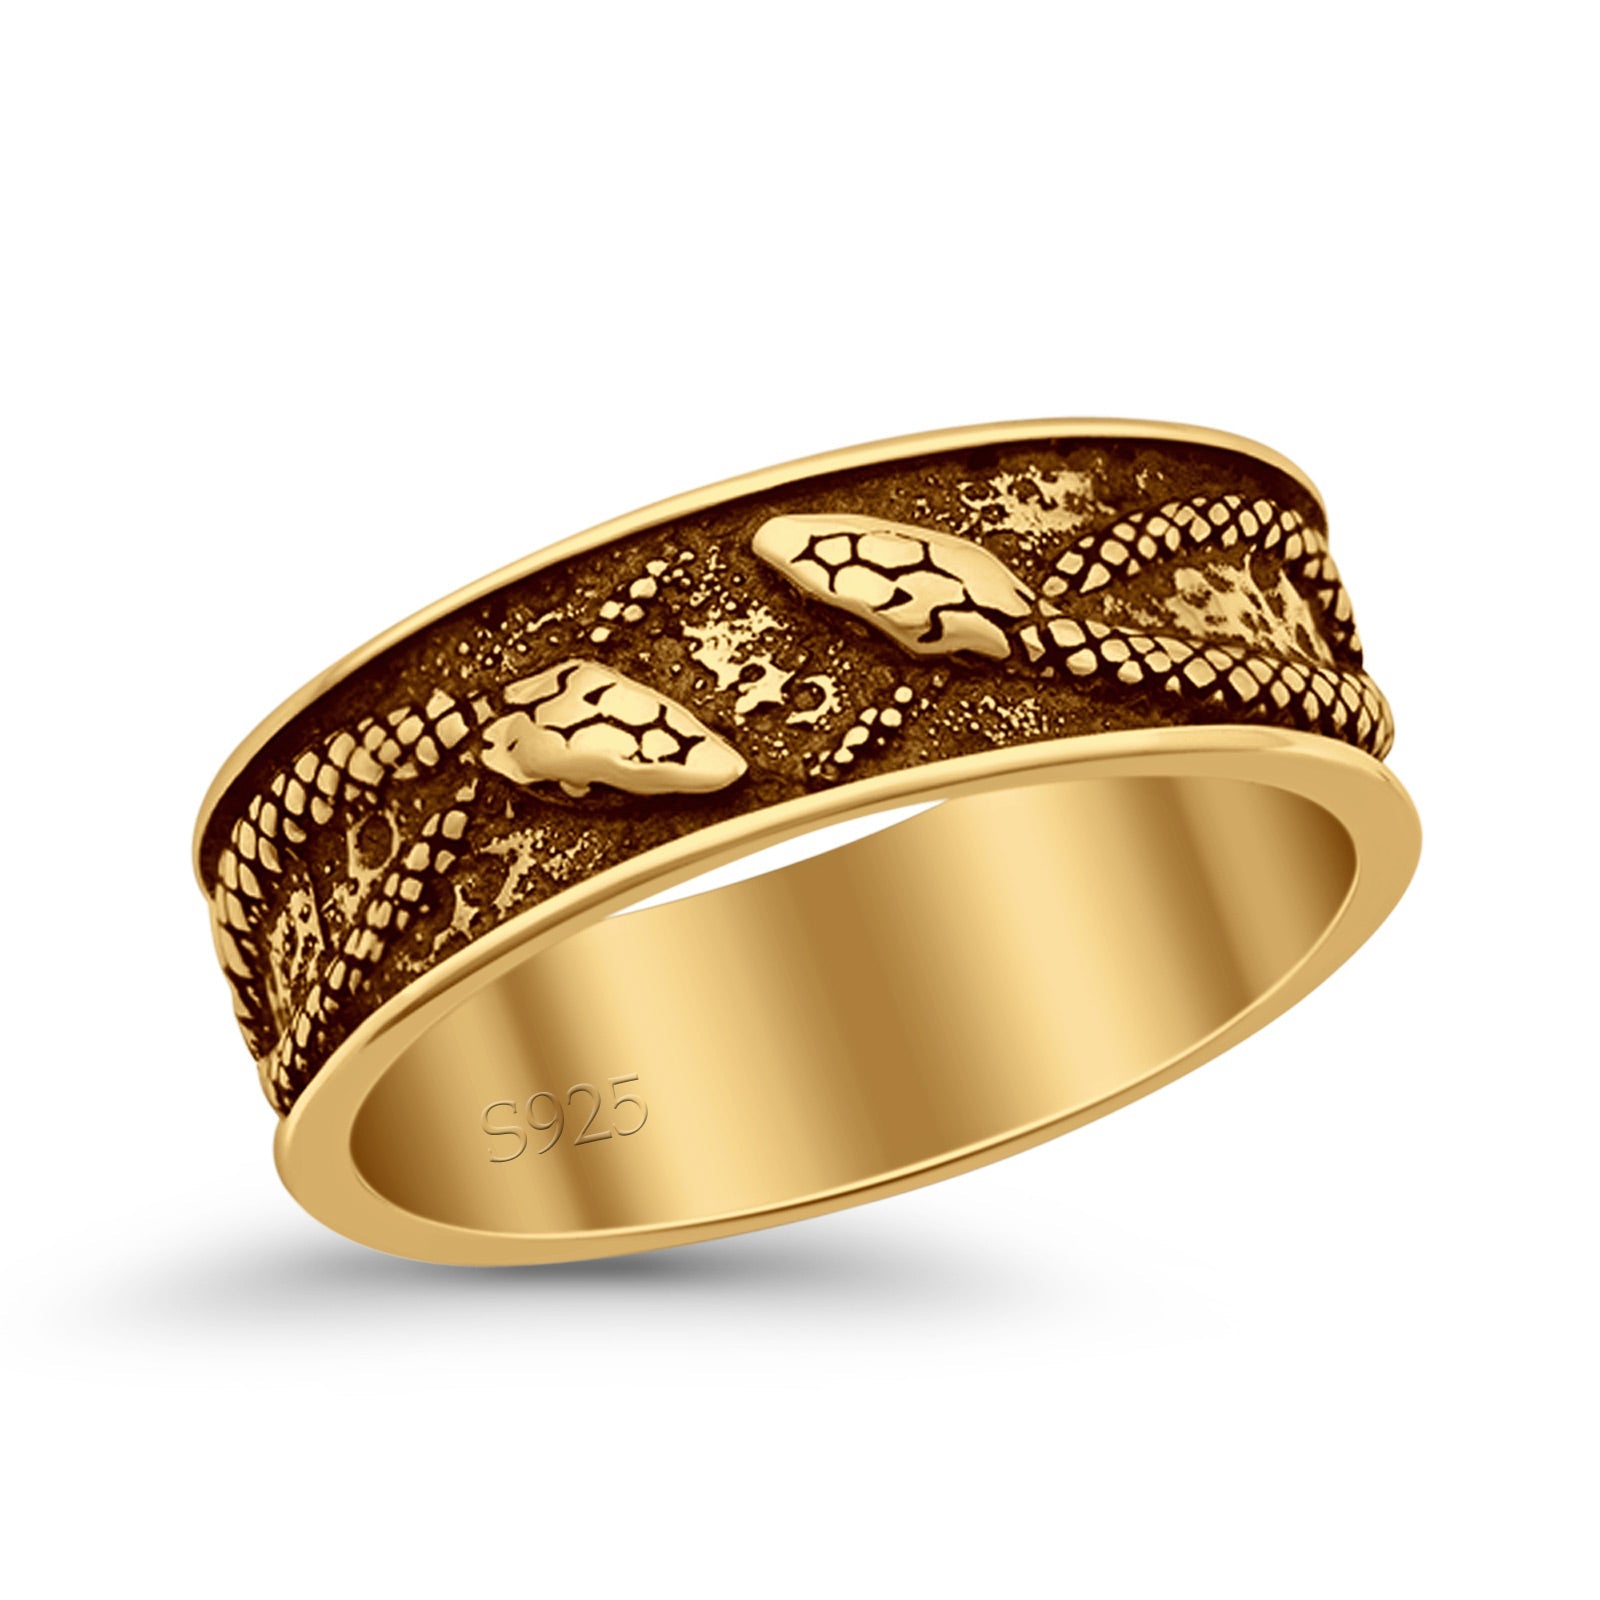 Thumb Rings For Women Gold - Shop on Pinterest